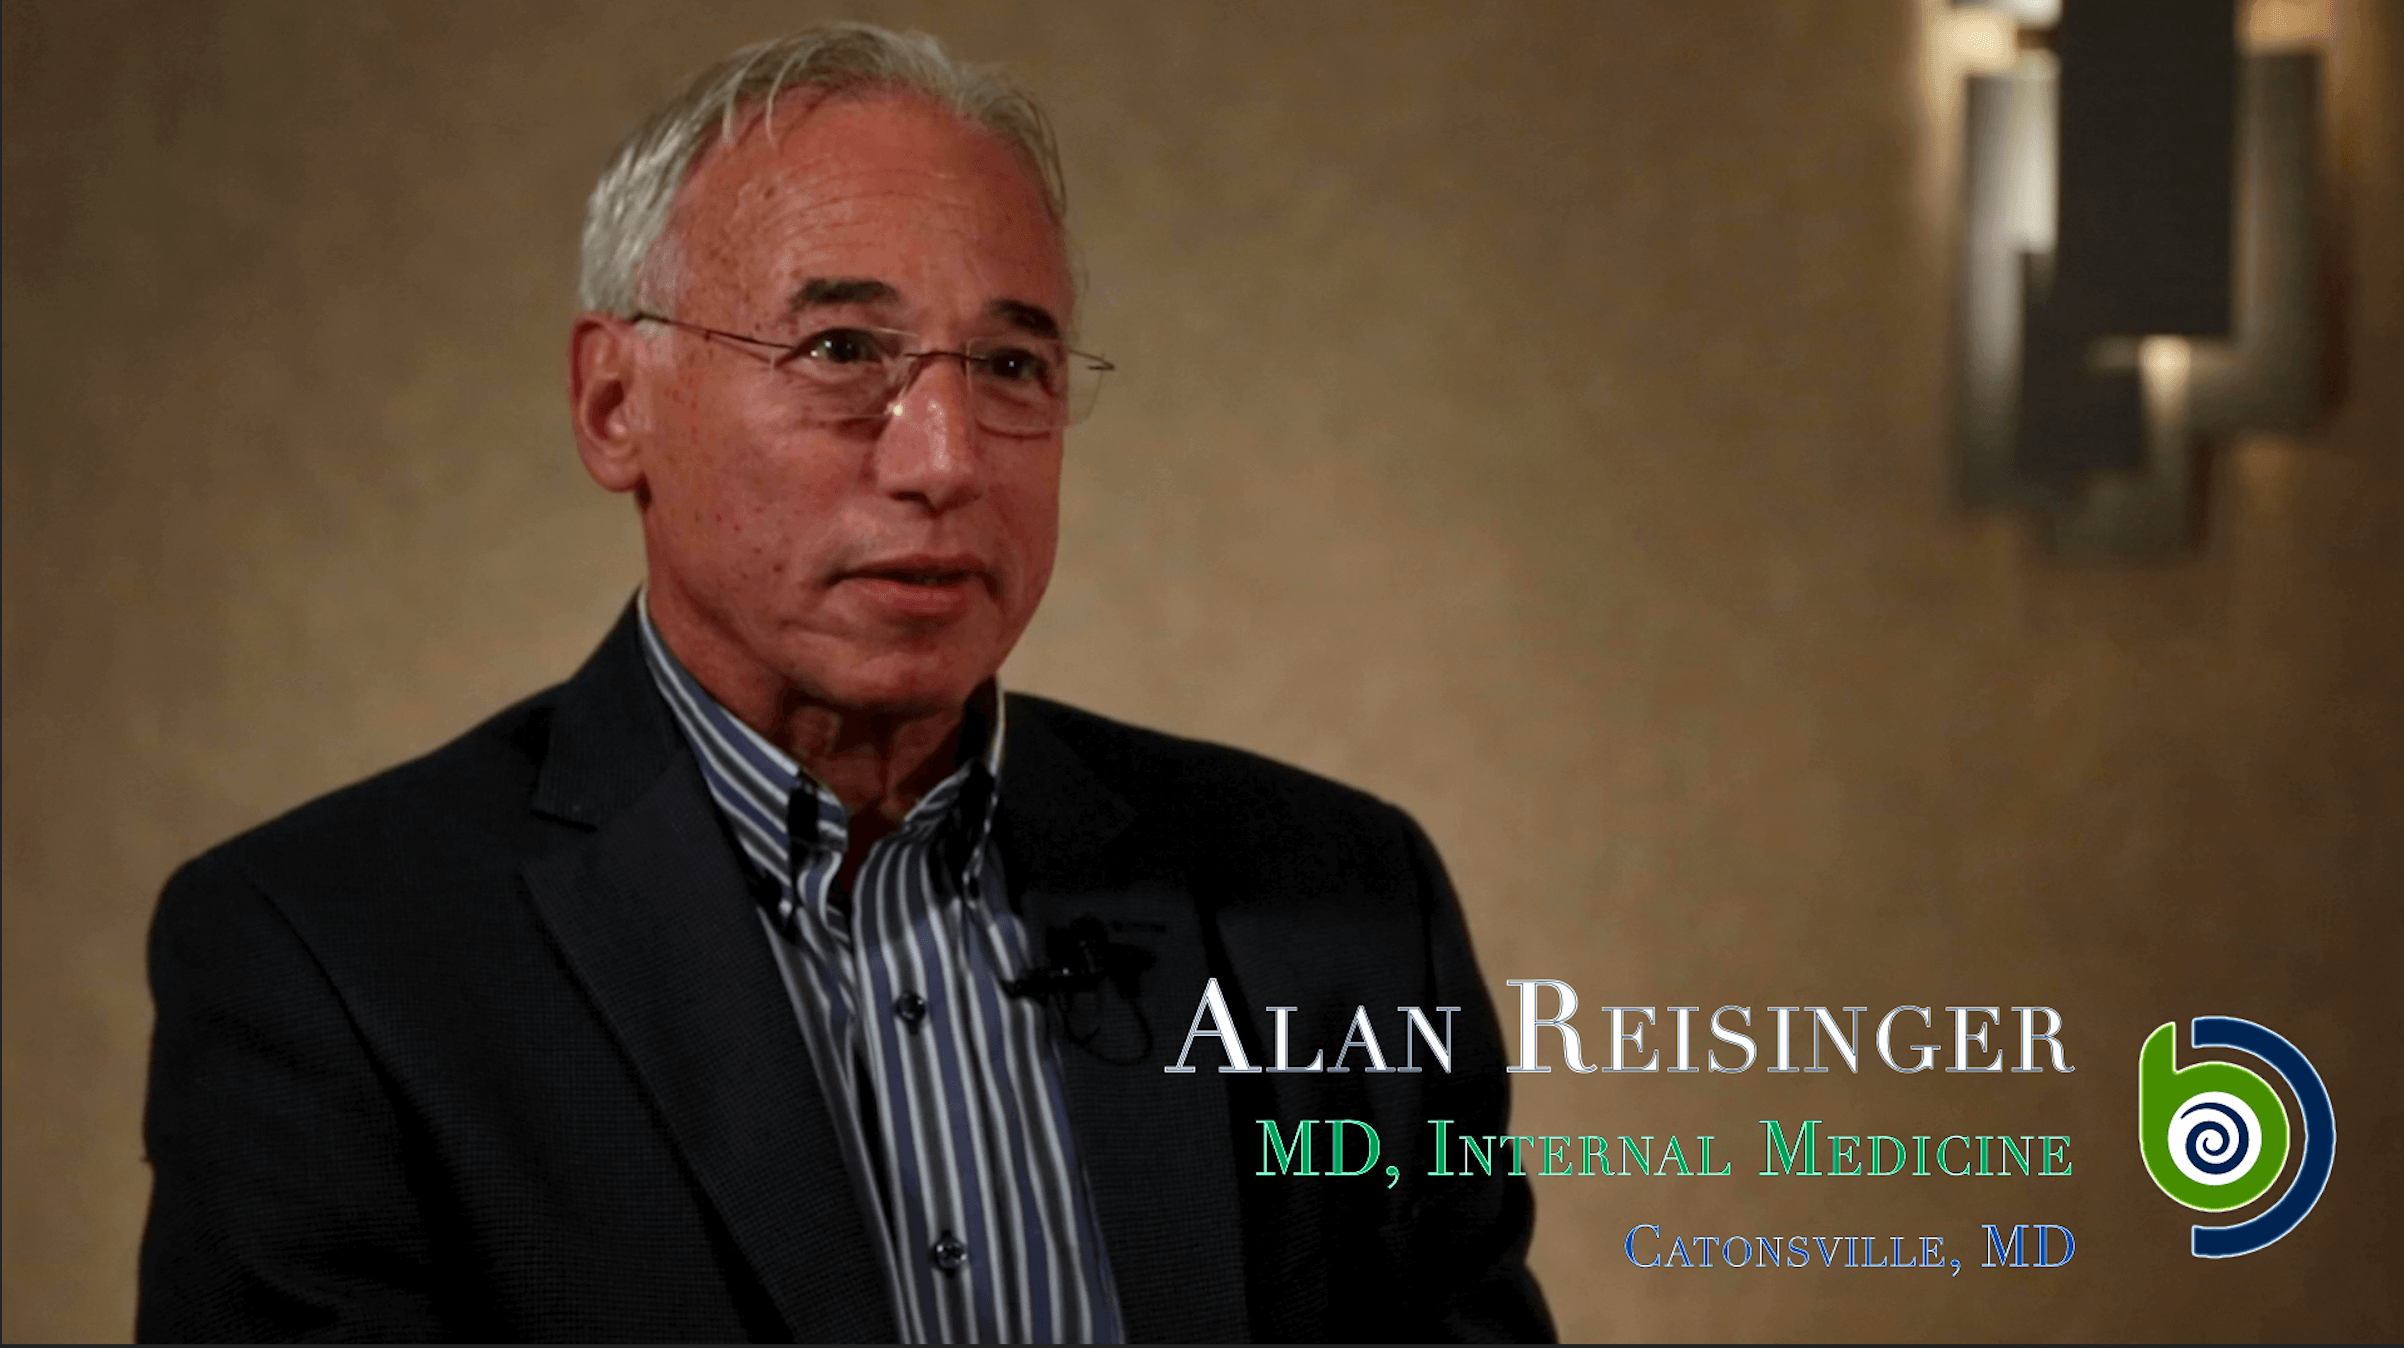 Alan Reisinger